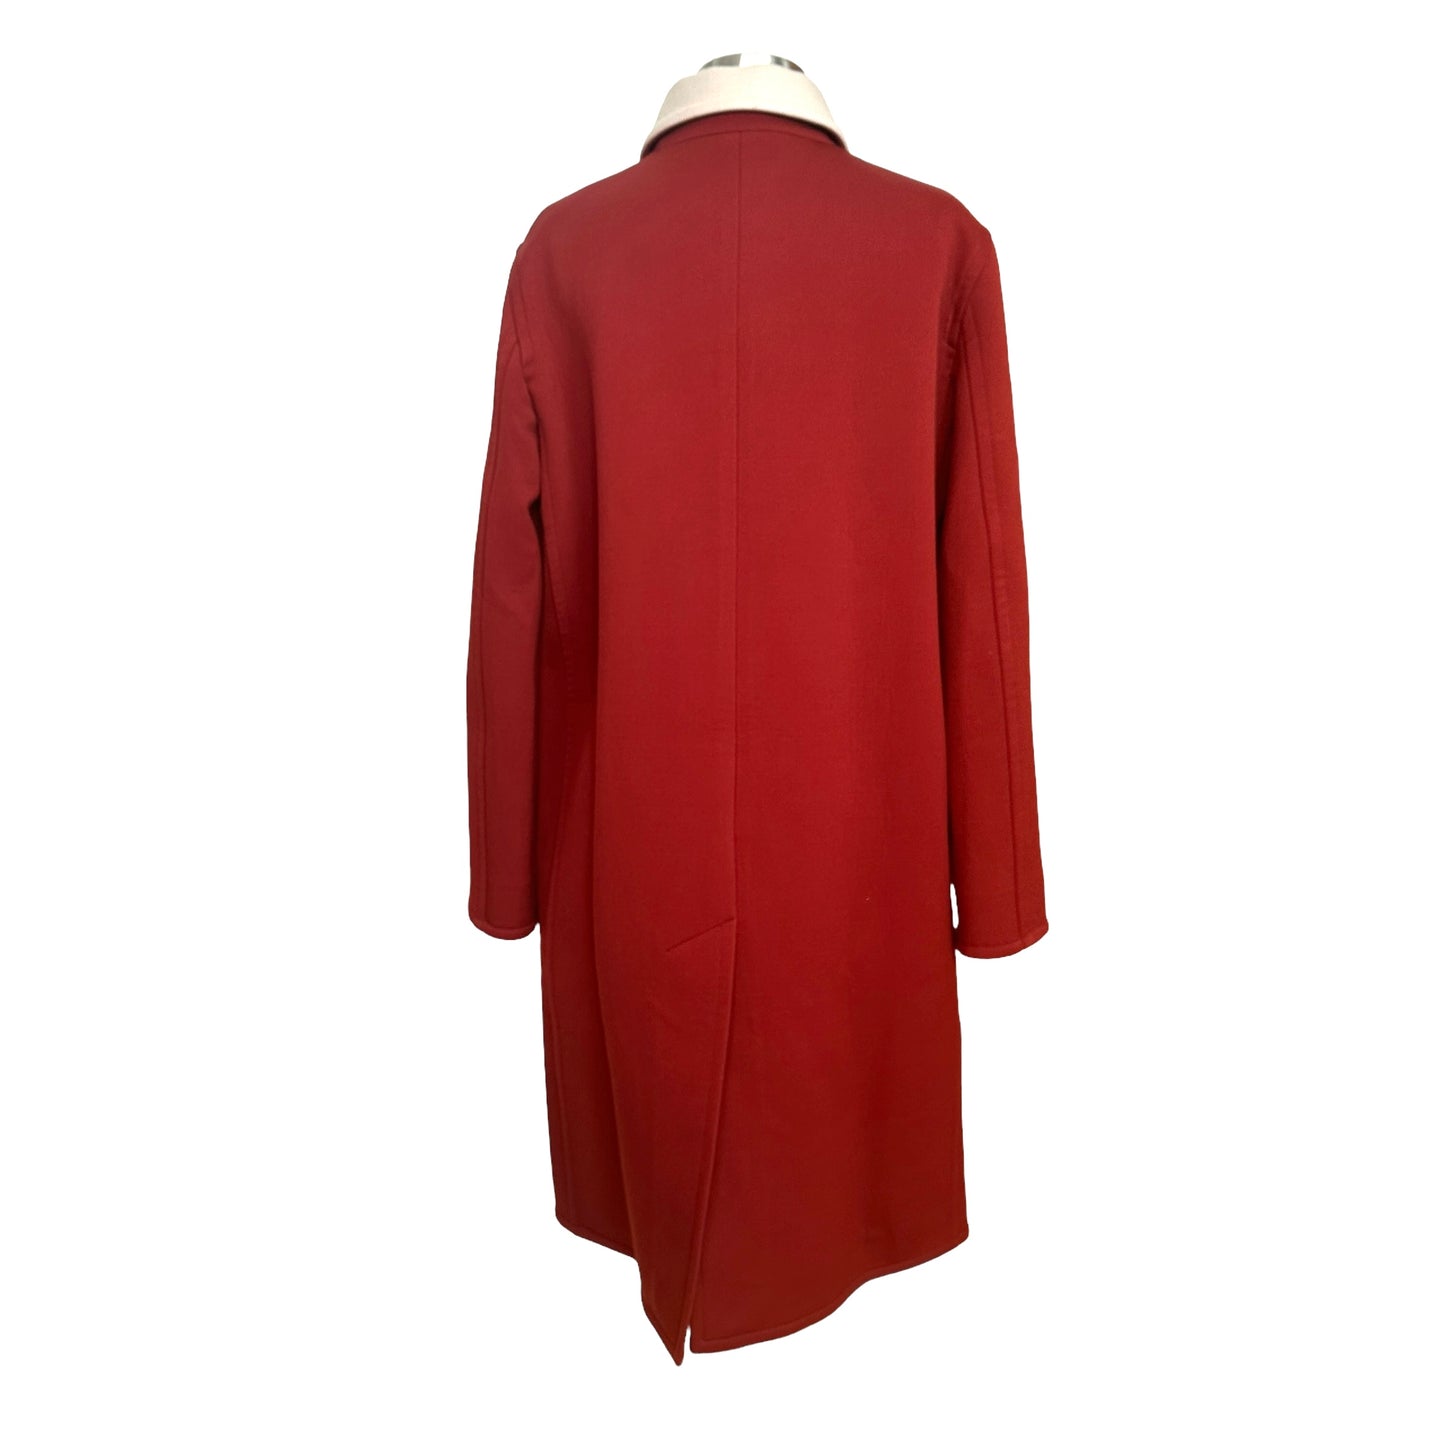 Red & Cream Wool Coat - S